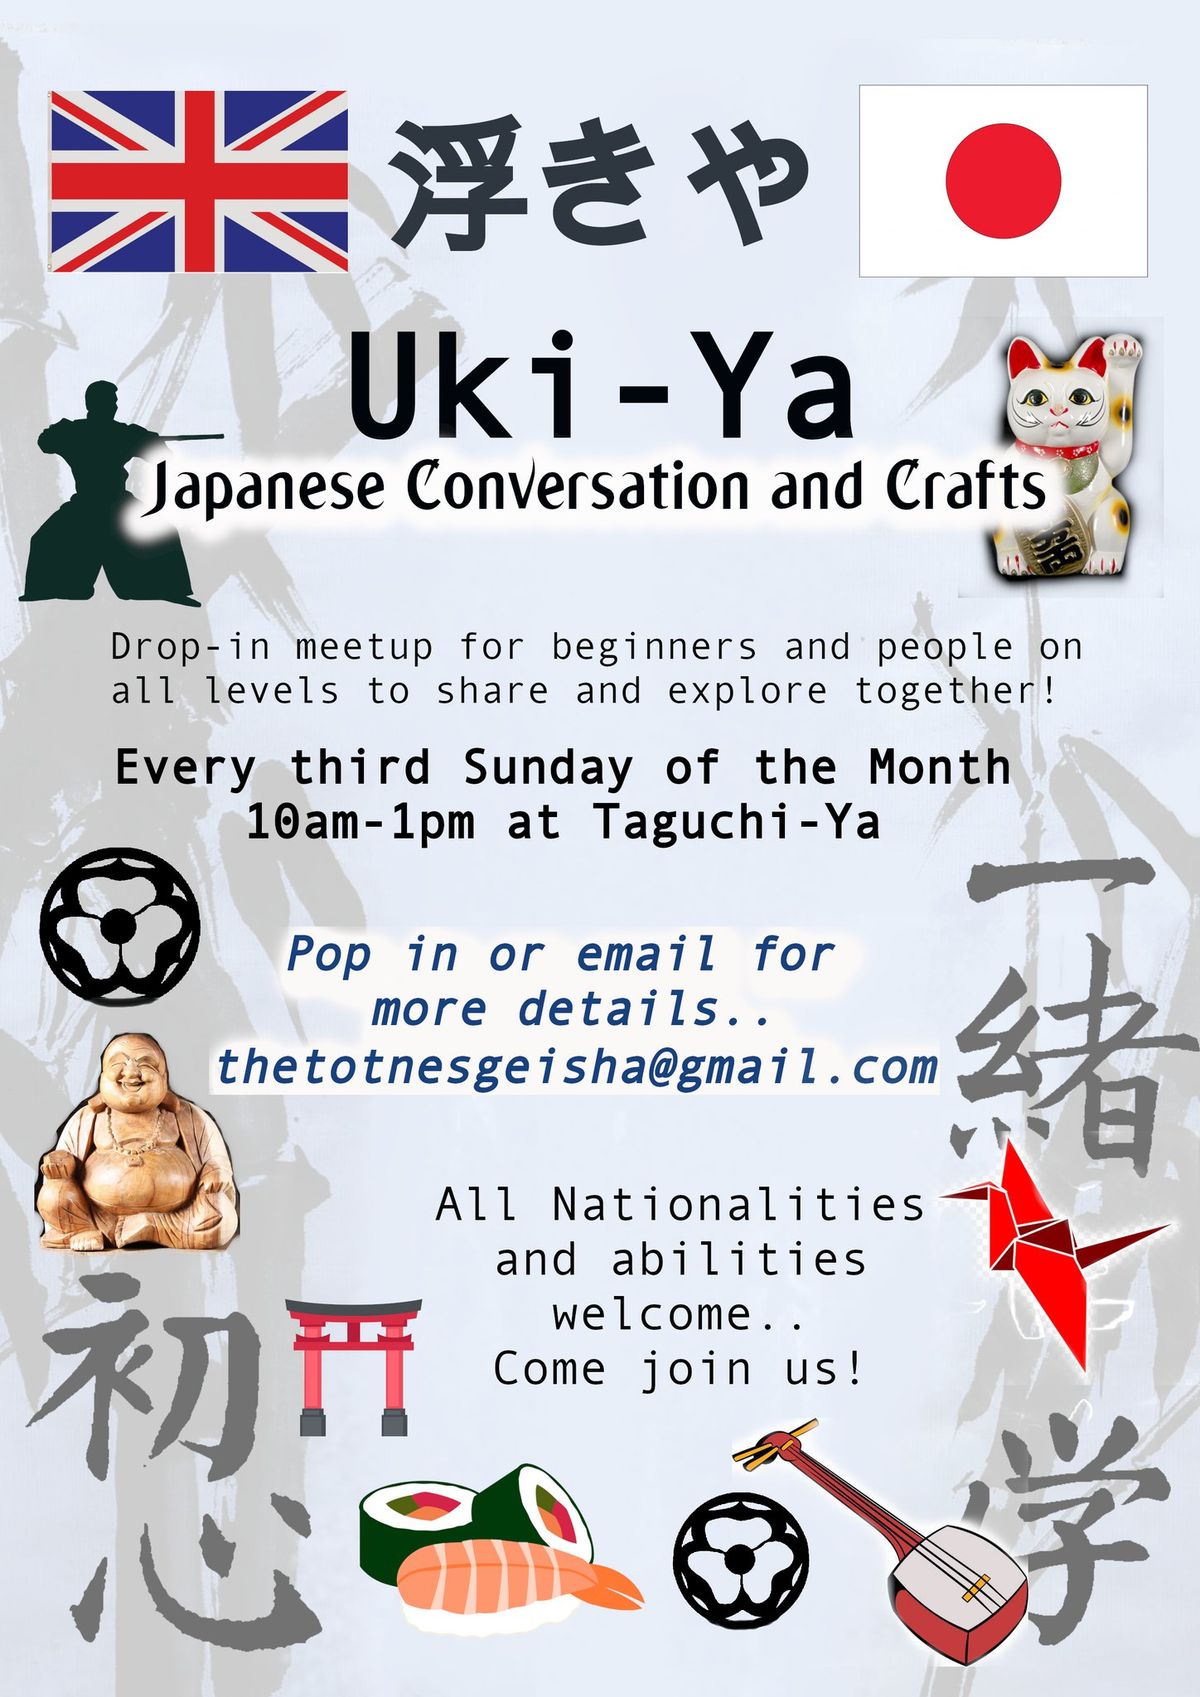 Uki-ya - Japanese Conversation and Crafts